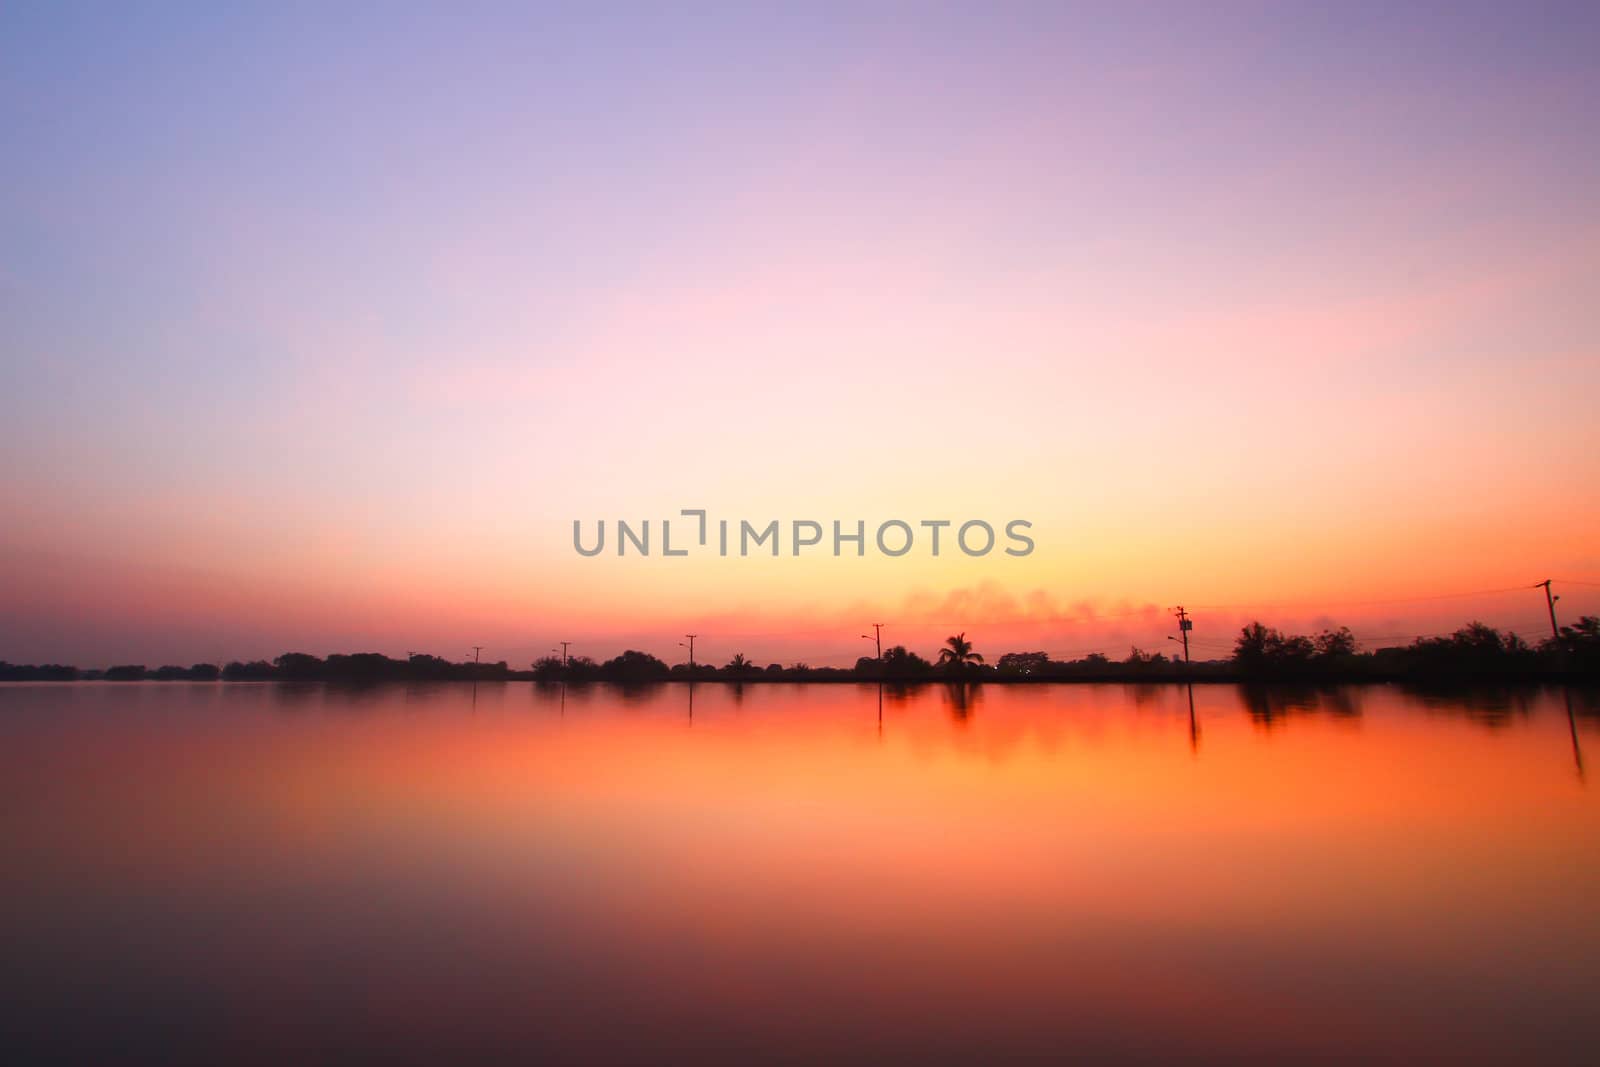 Sunset along the pond by bajita111122